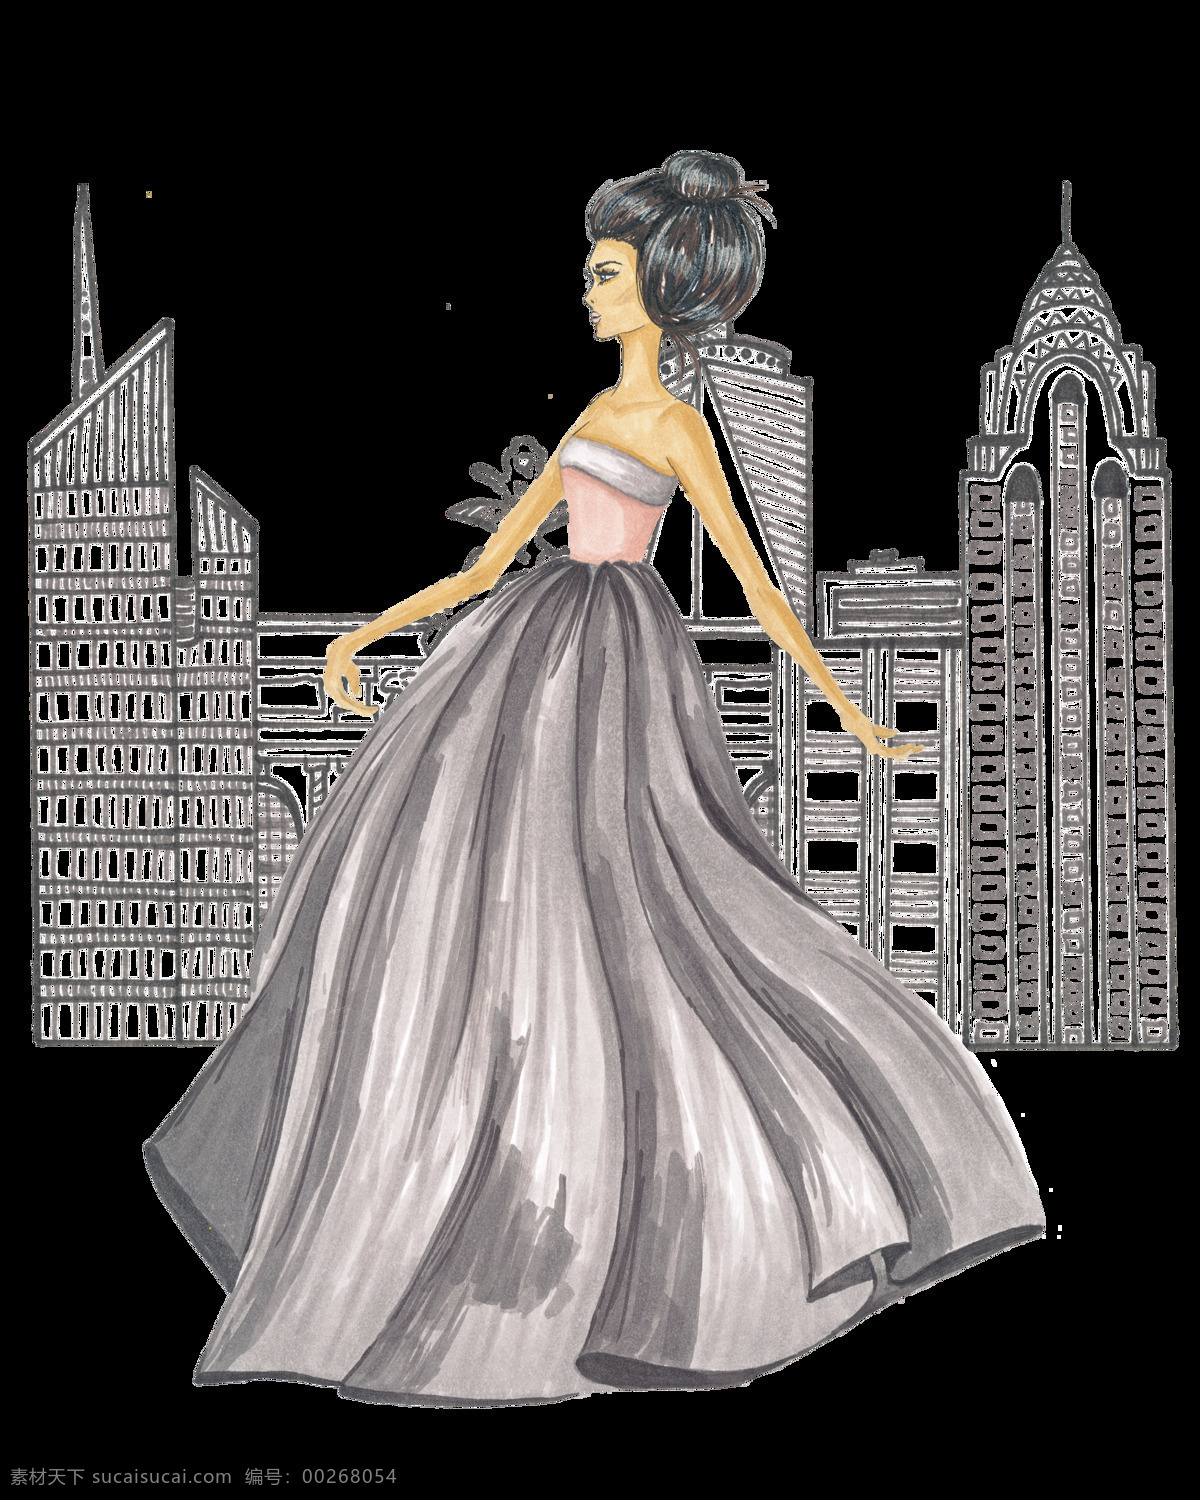 少女 裙子 透明 卡通 灰色 矢量素材 设计素材